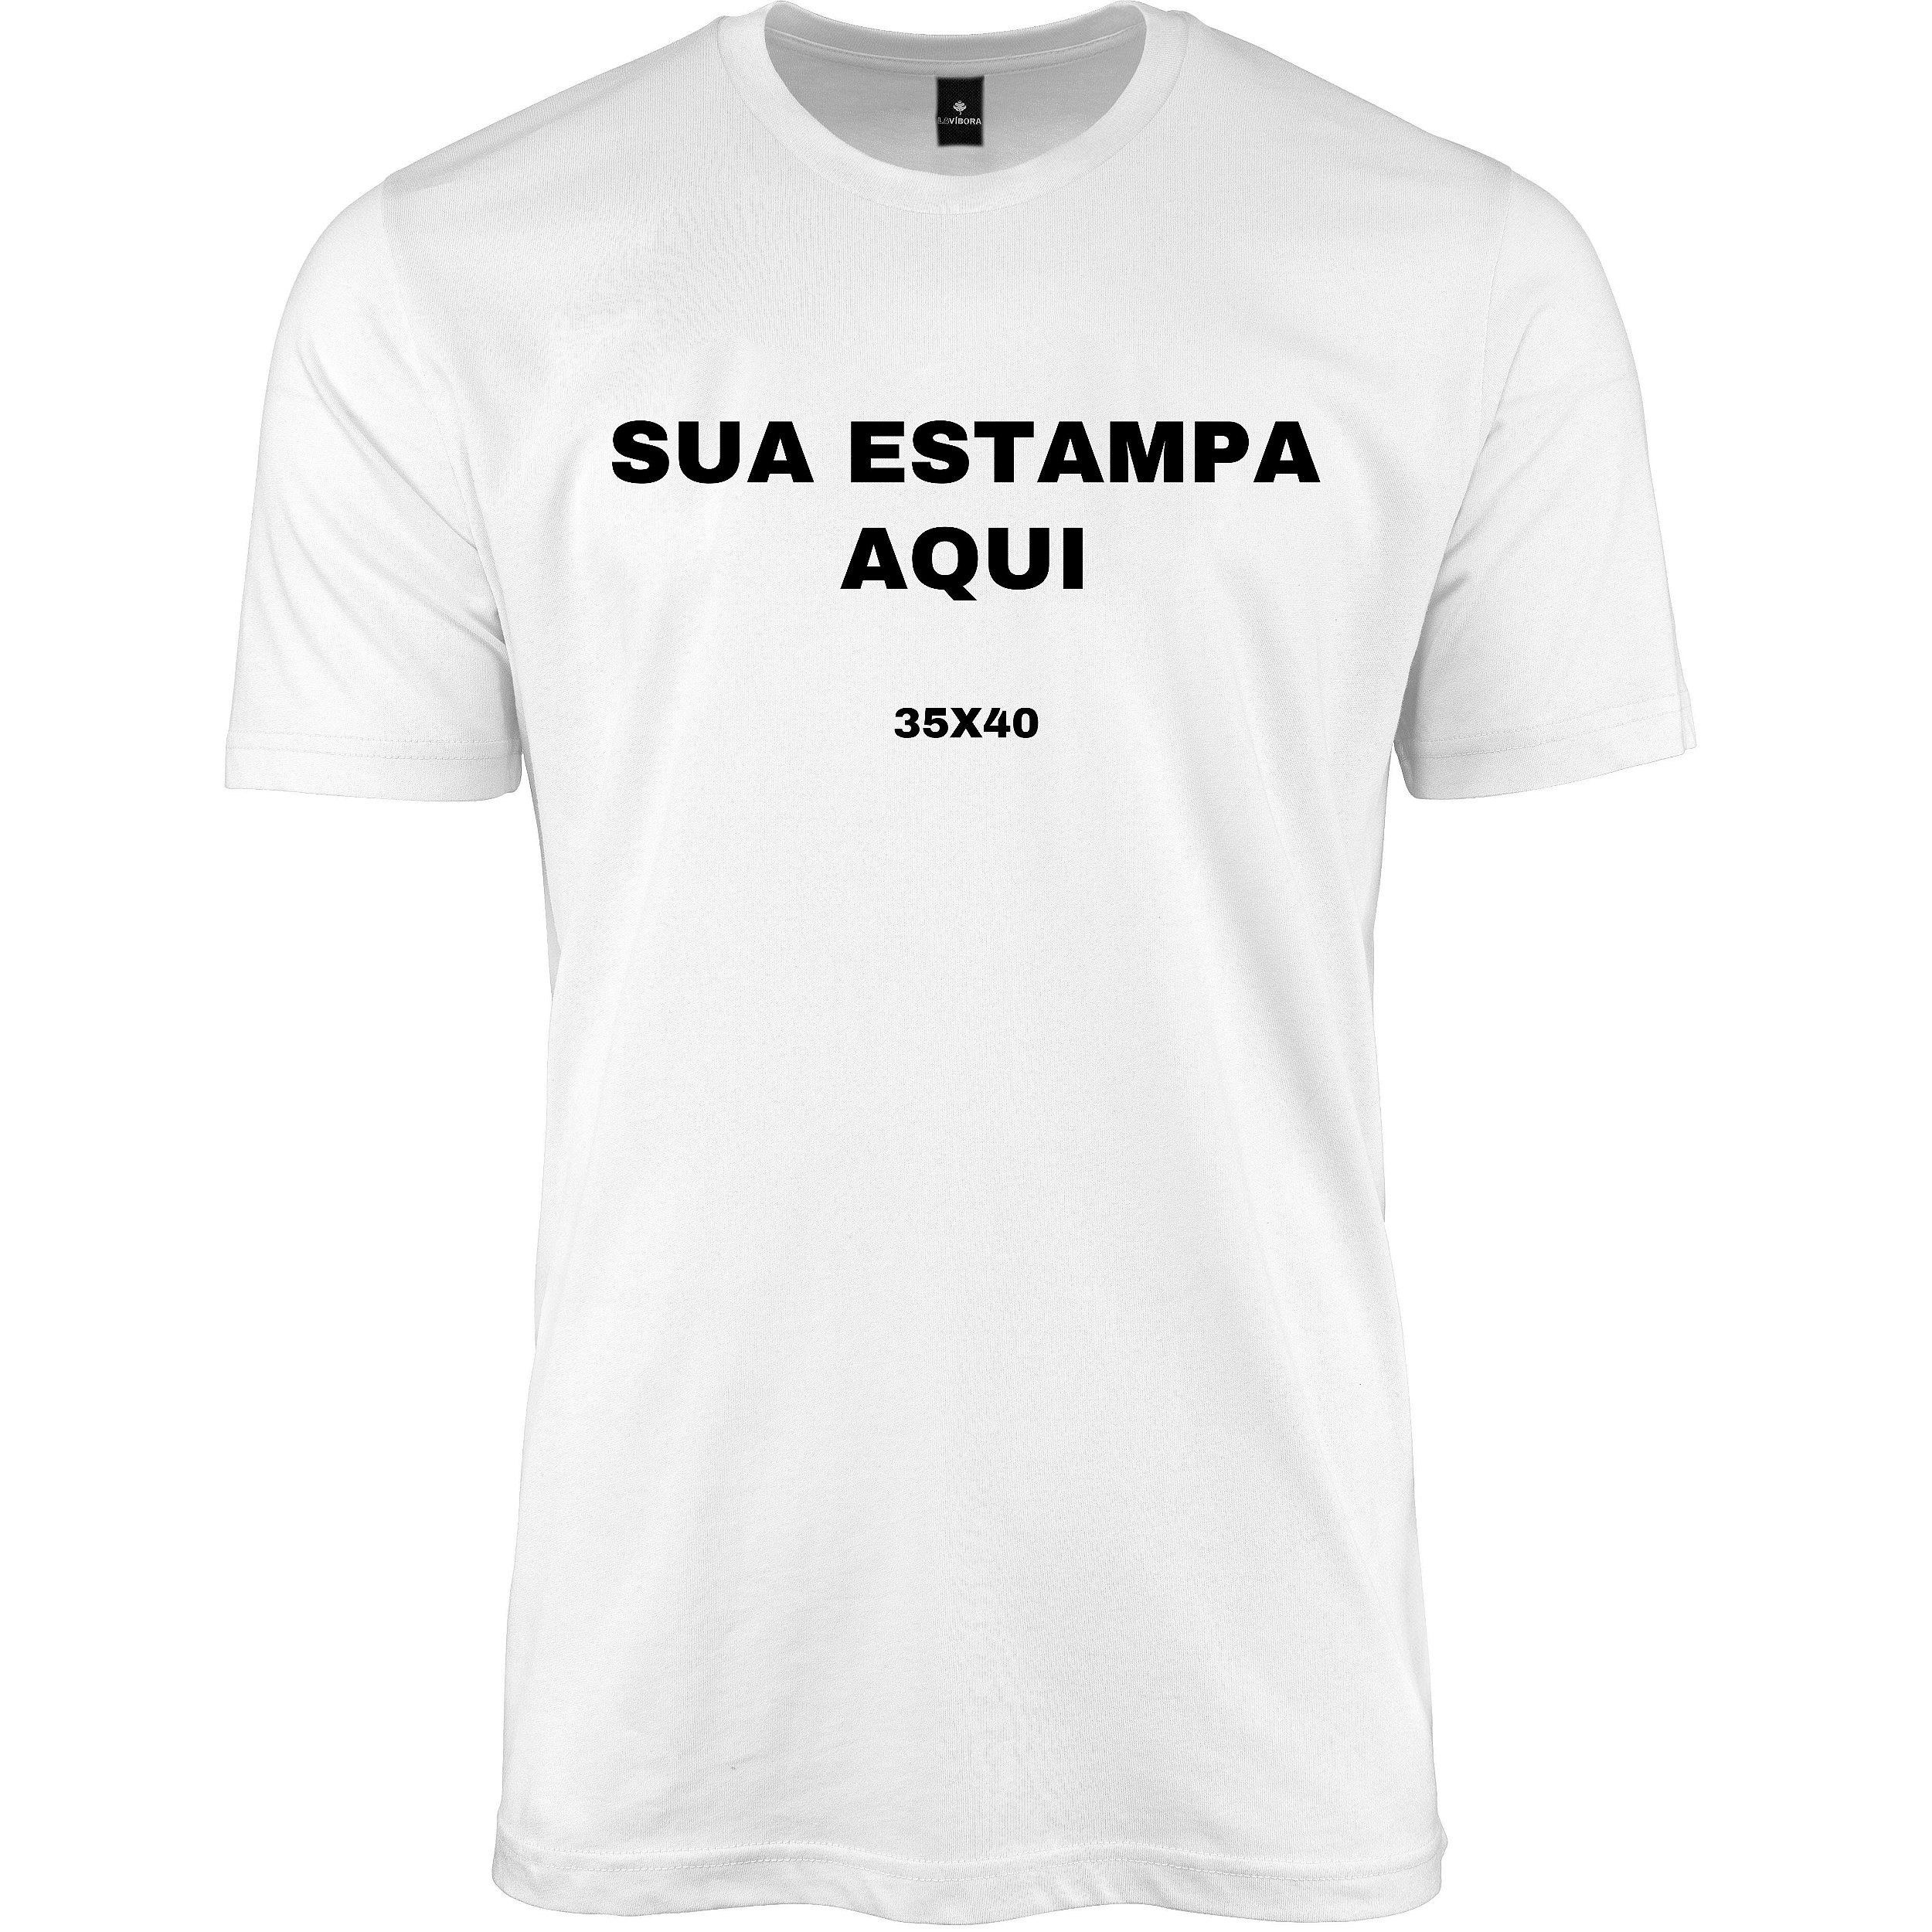 Camiseta Personalizada Online | LaVíbora | Qualidade premium - LaVíbora:  Shorts Masculinos de Praia, Roupas e mais!